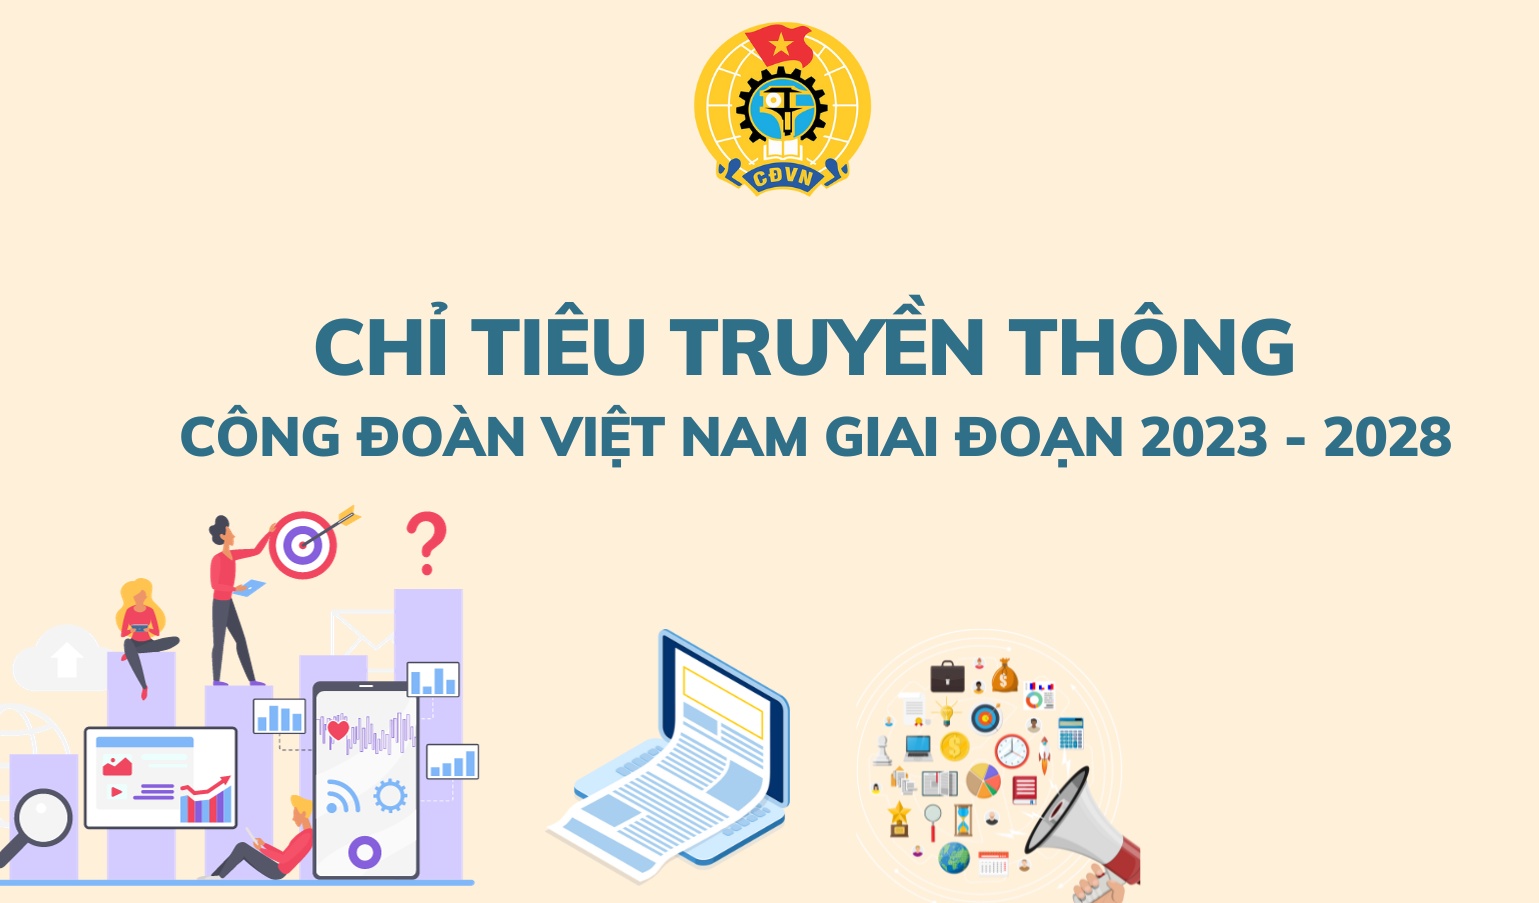 Chỉ tiêu truyền thông Công đoàn Việt Nam giai đoạn 2023 - 2028